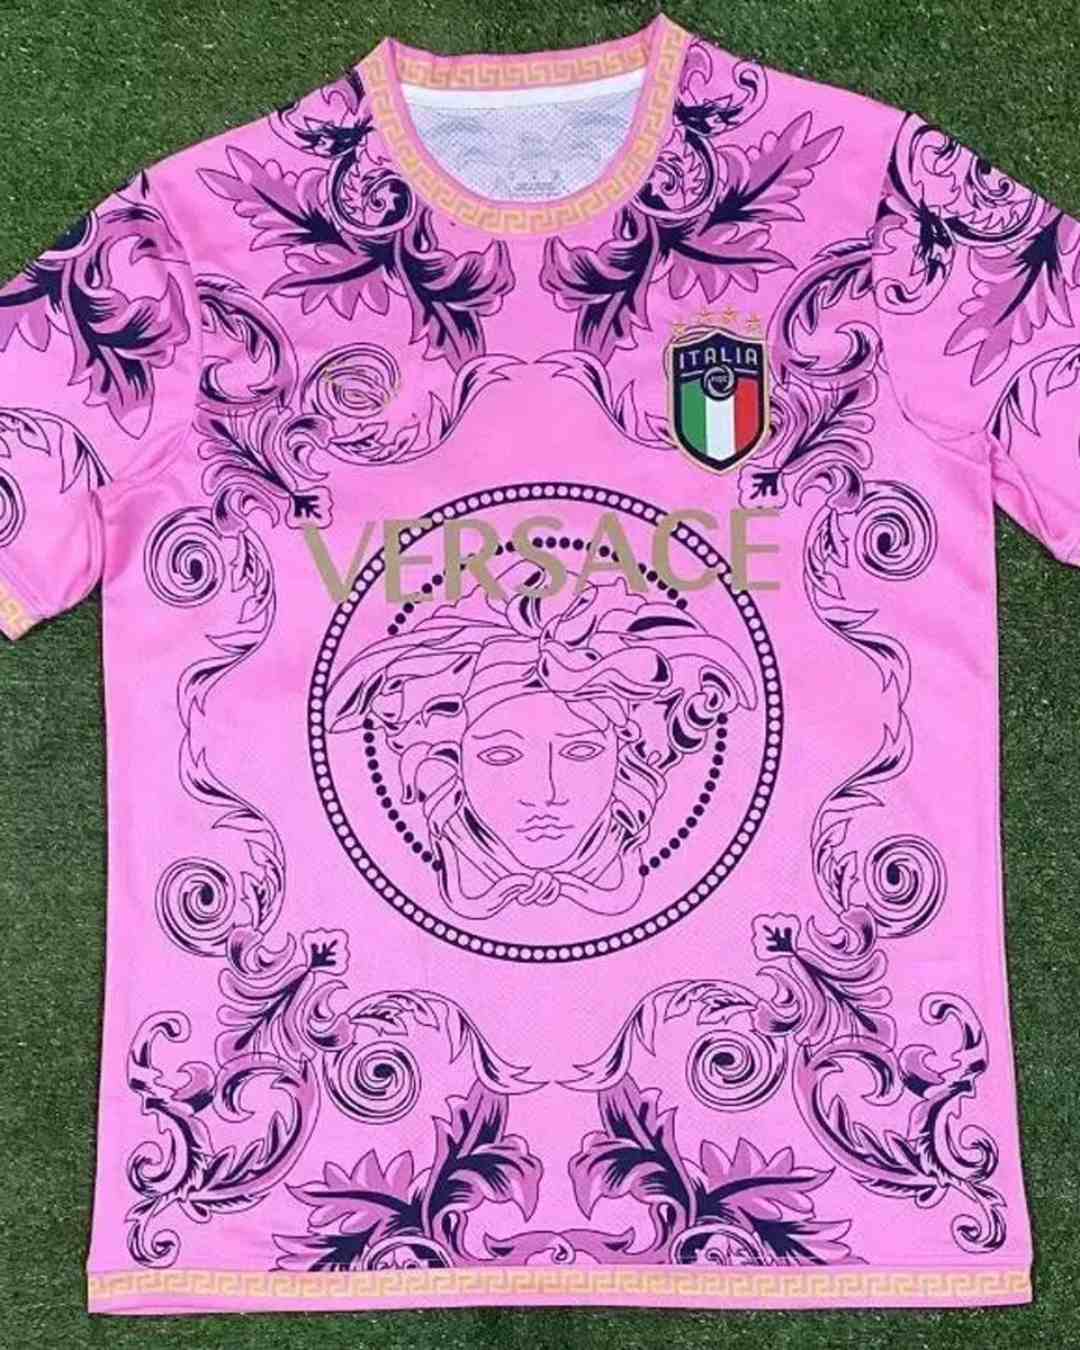 Versace football shirt